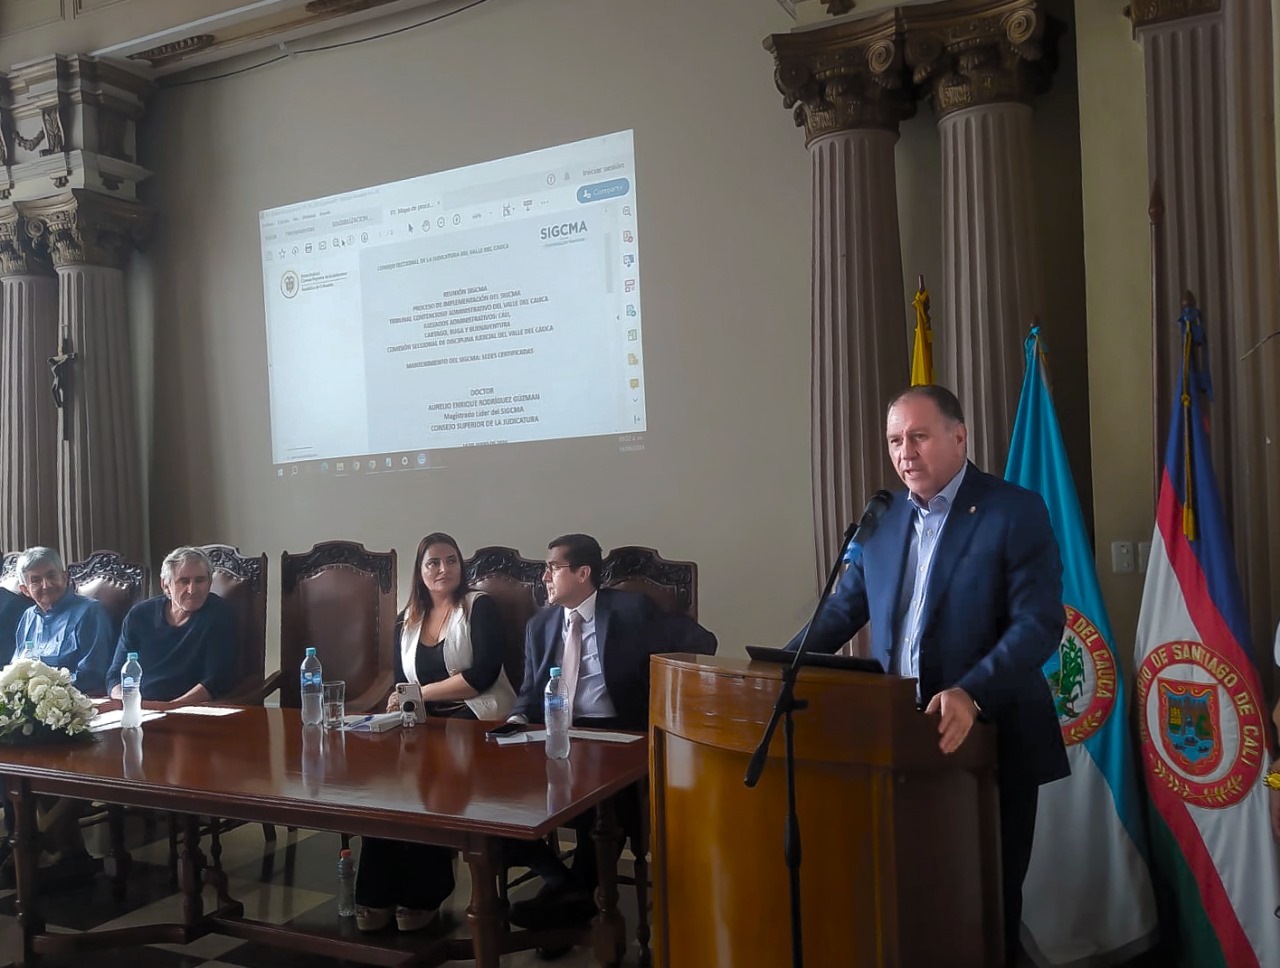 Tribunal Contencioso Administrativo del Valle del Cauca y Comisión Seccional de Disciplina judicial del Valle del Cauca iniciaron proceso de certificación del SIGCMA